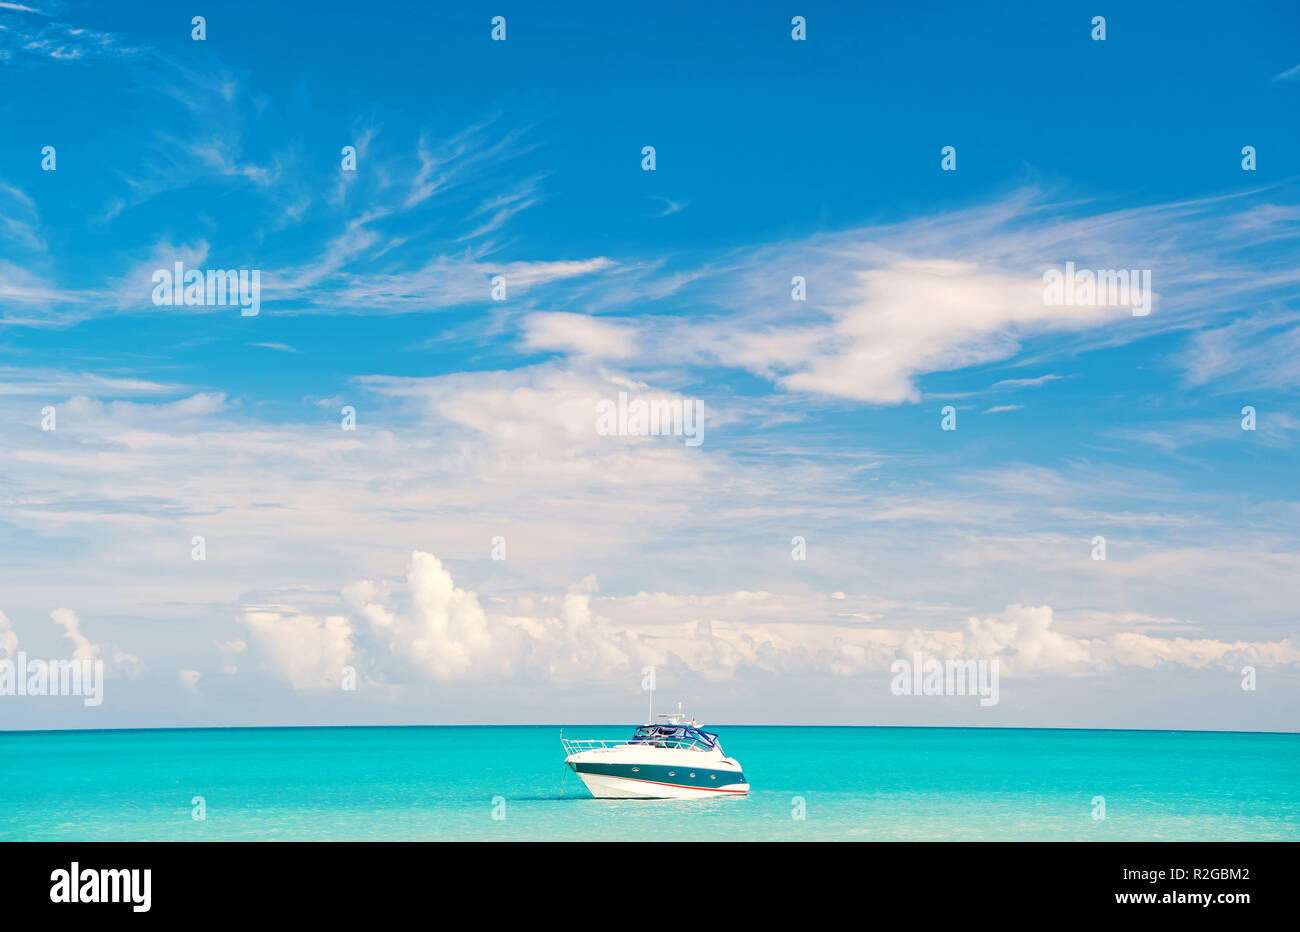 Noleggio barca sul mare o acqua oceanica in st Johns, Antigua, sulla giornata di sole sul cielo blu sullo sfondo. Vacanze estive sui Caraibi. Avventura, viaggiare, wanderlust concept Foto Stock